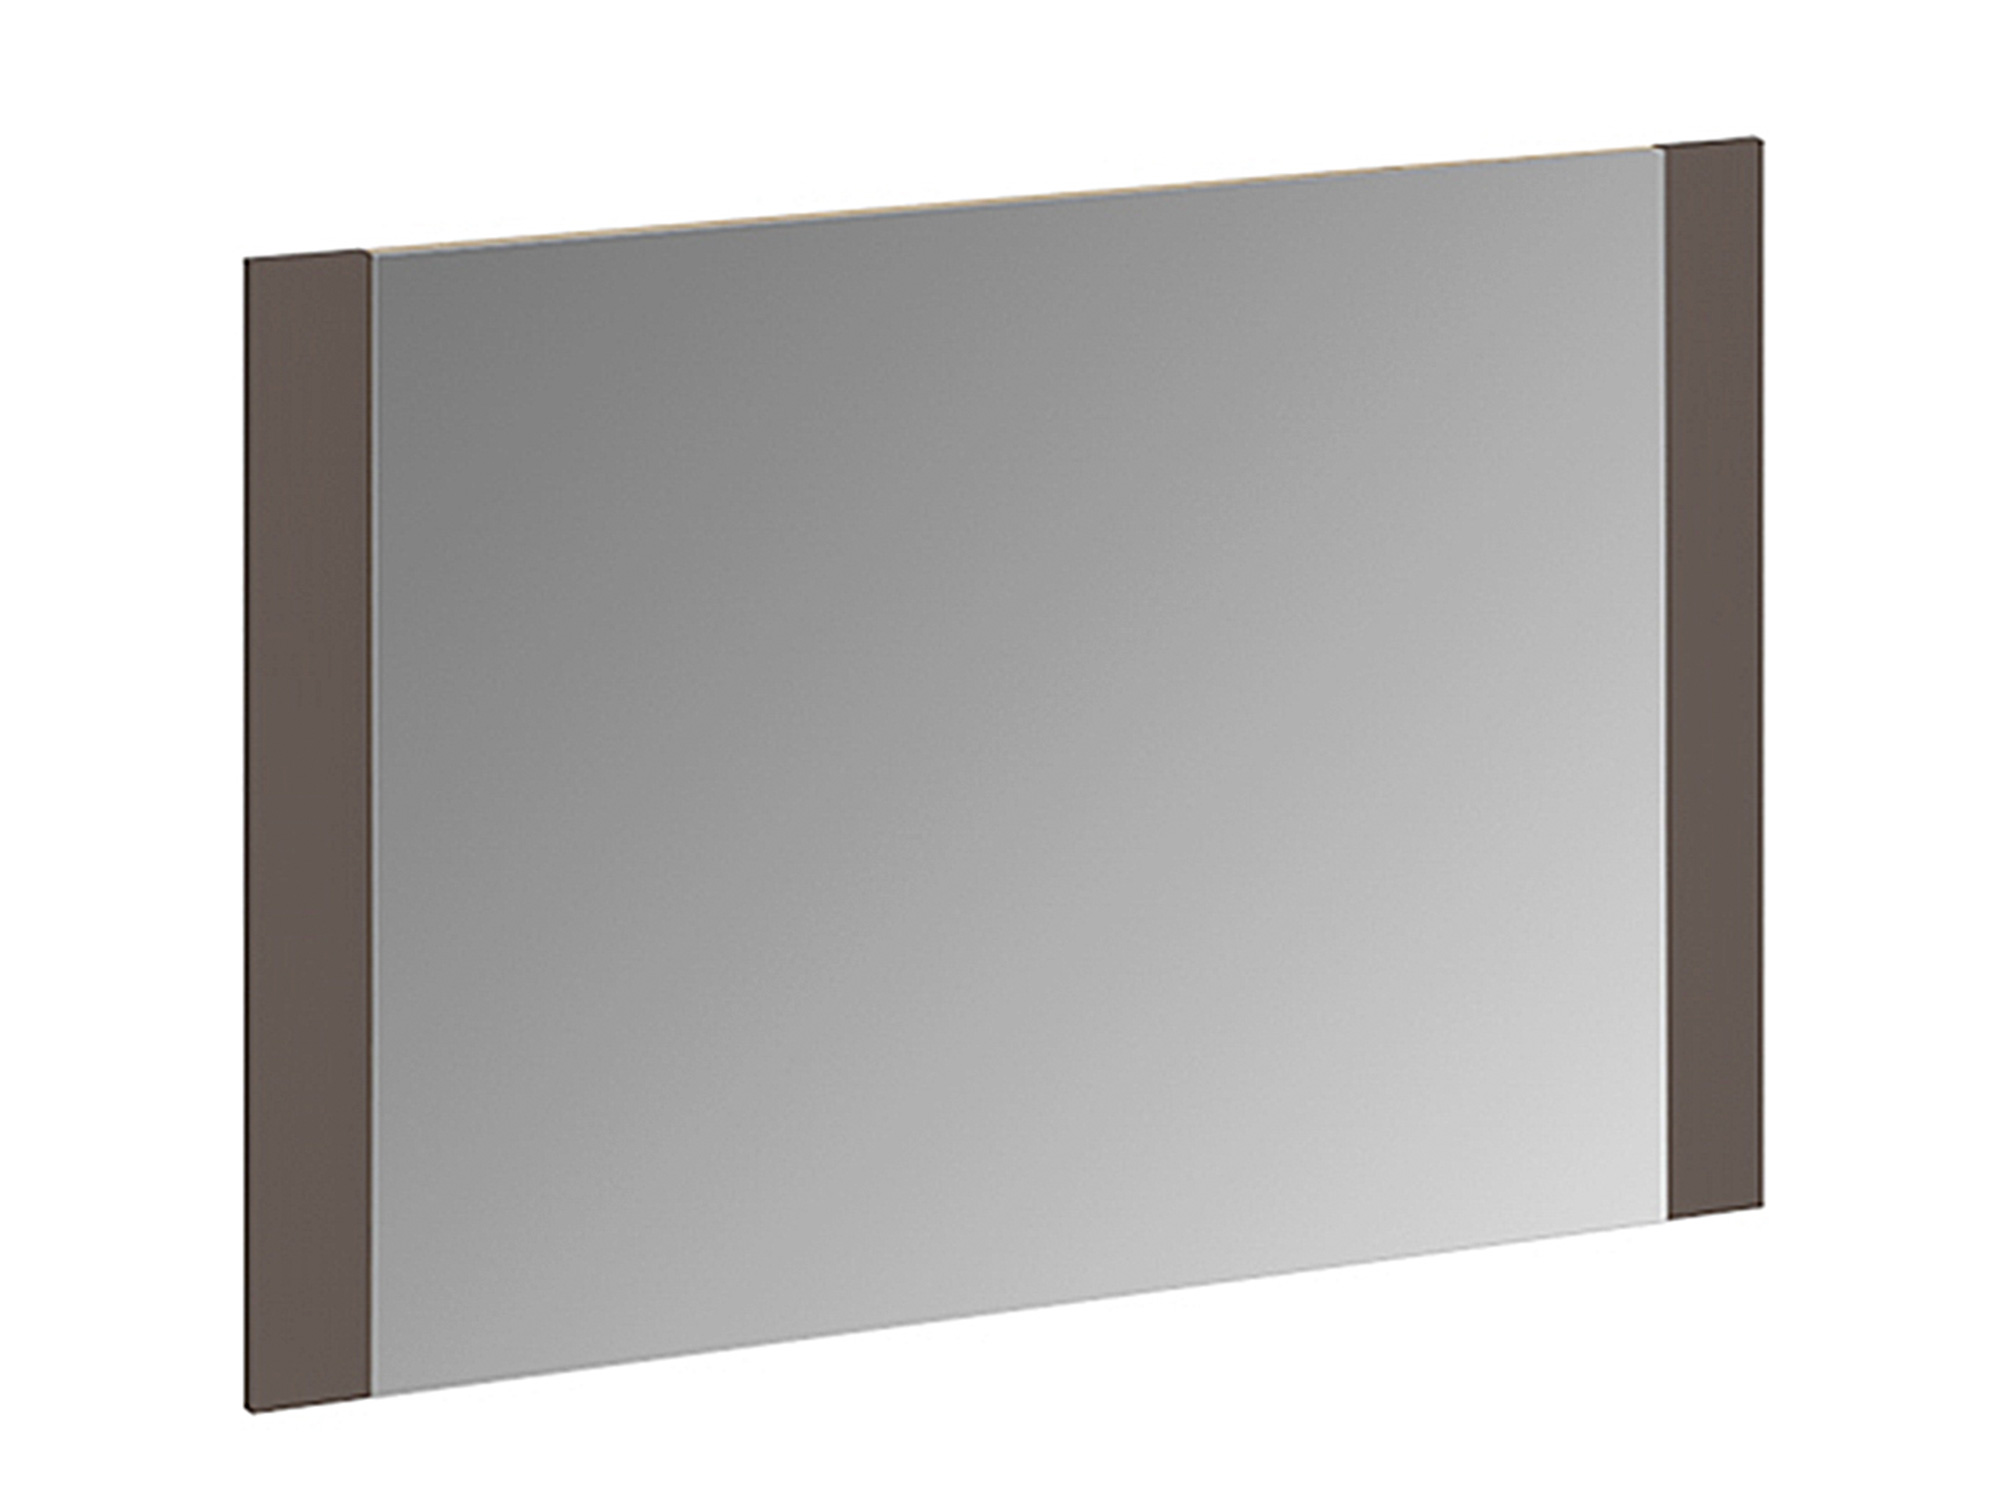 Панель с зеркалом Николь Фон Коричневый, , Коричневый, Бежевый, Зеркало, ЛДСП панель с зеркалом николь фон коричневый коричневый бежевый зеркало лдсп